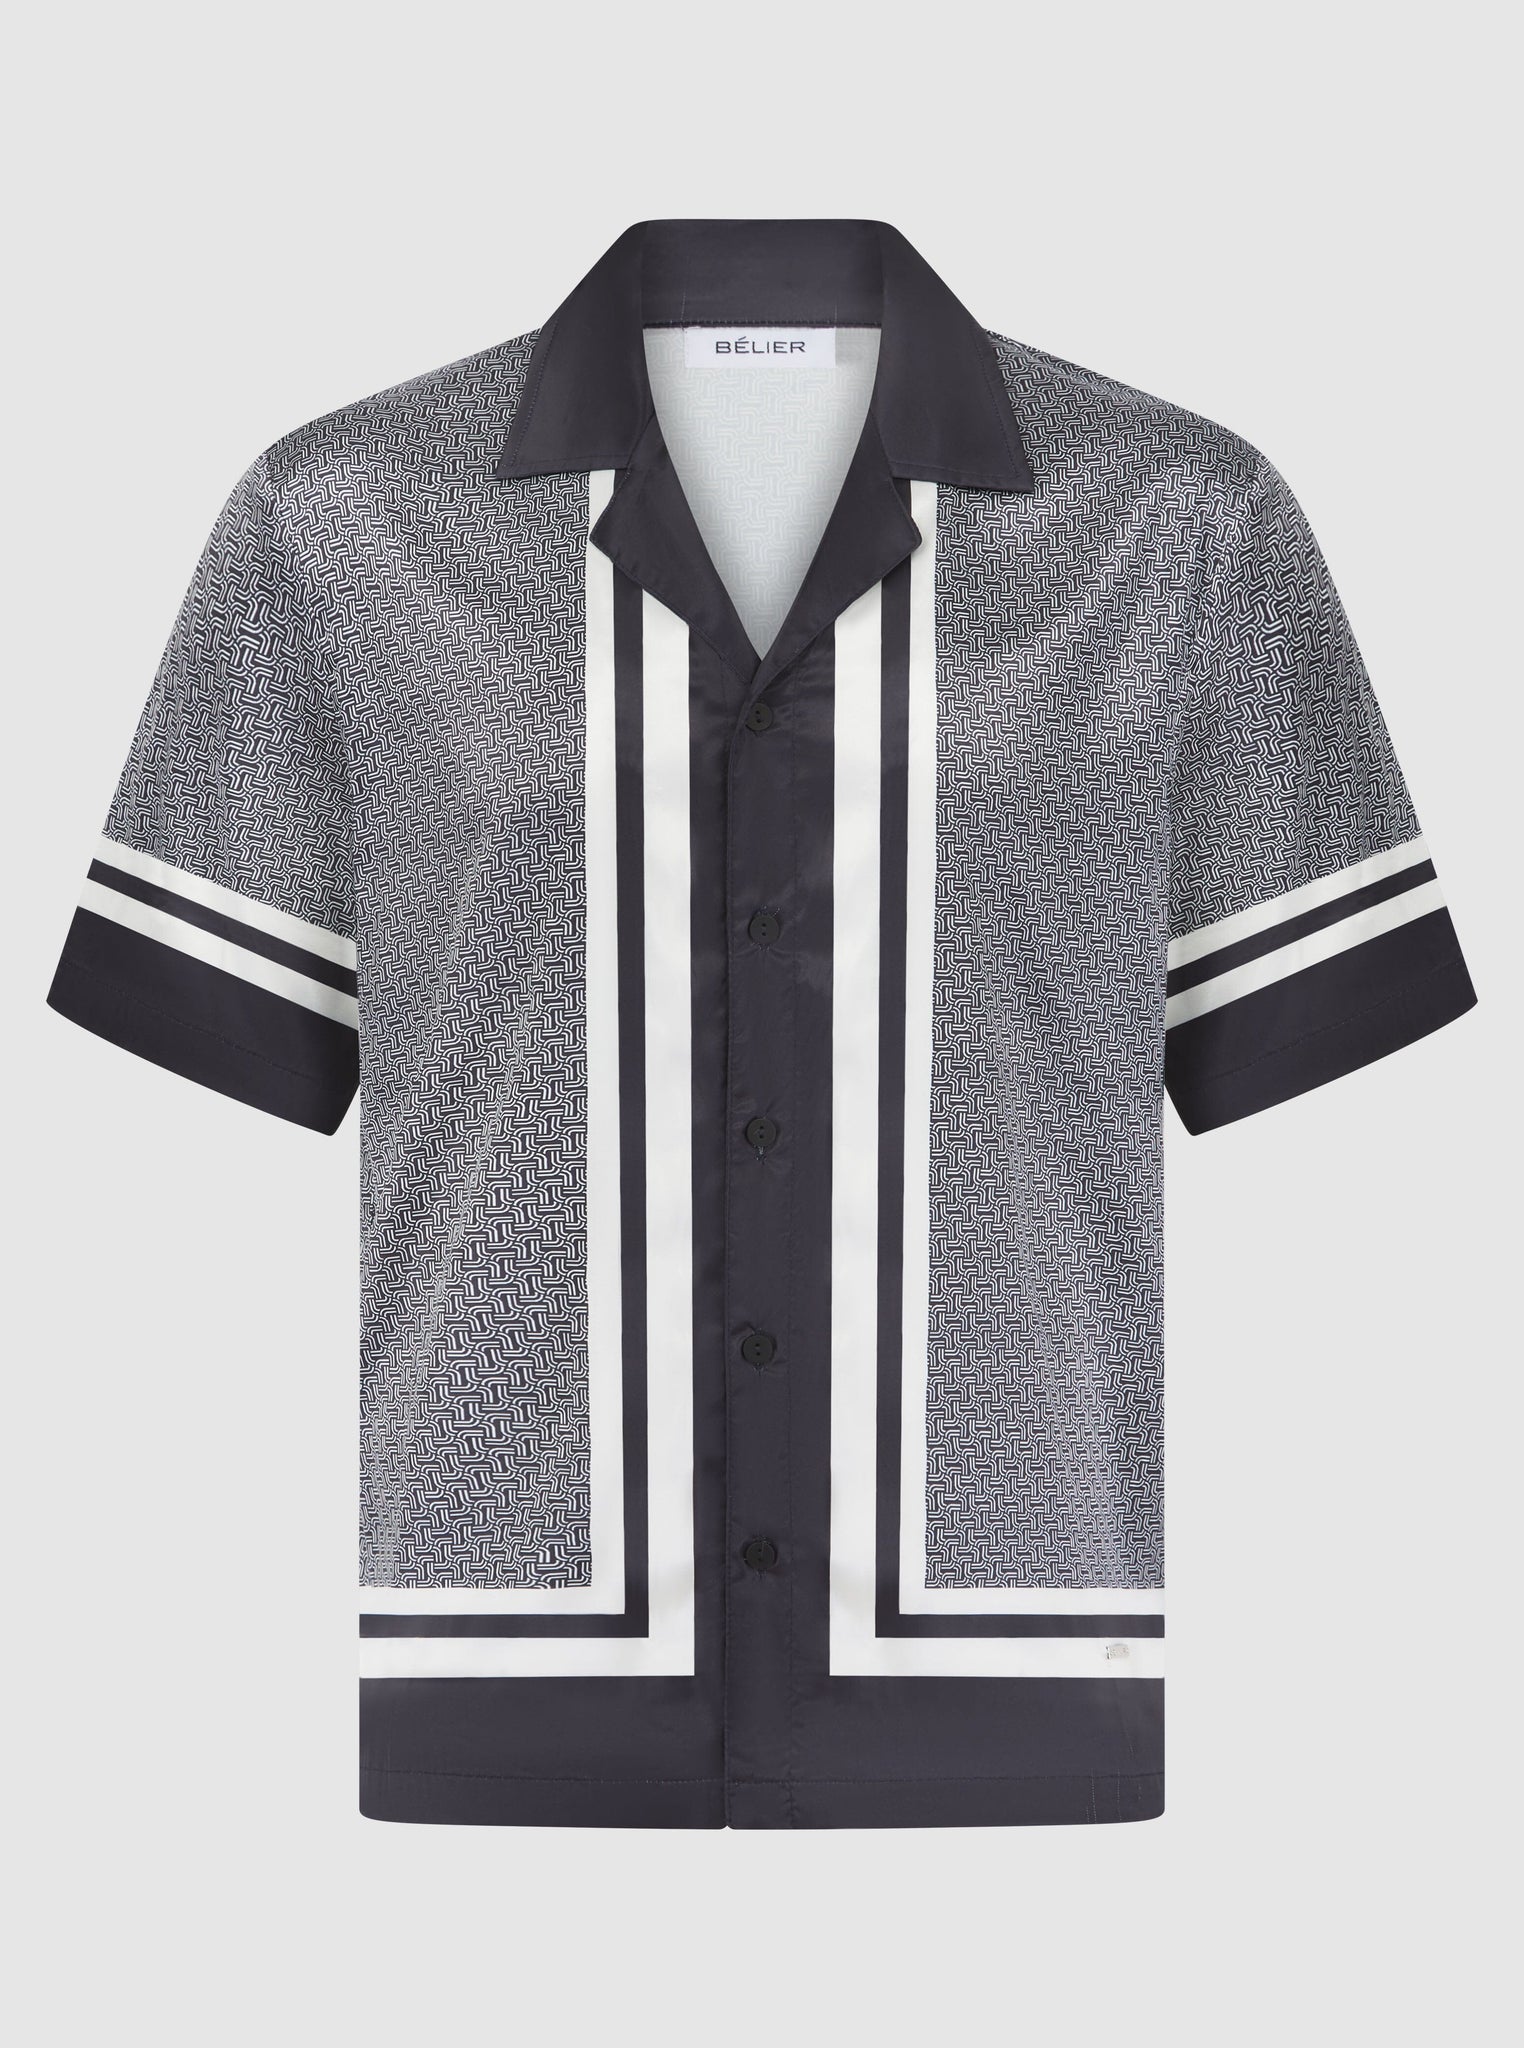 White/Black S/S Printed Resort Shirt